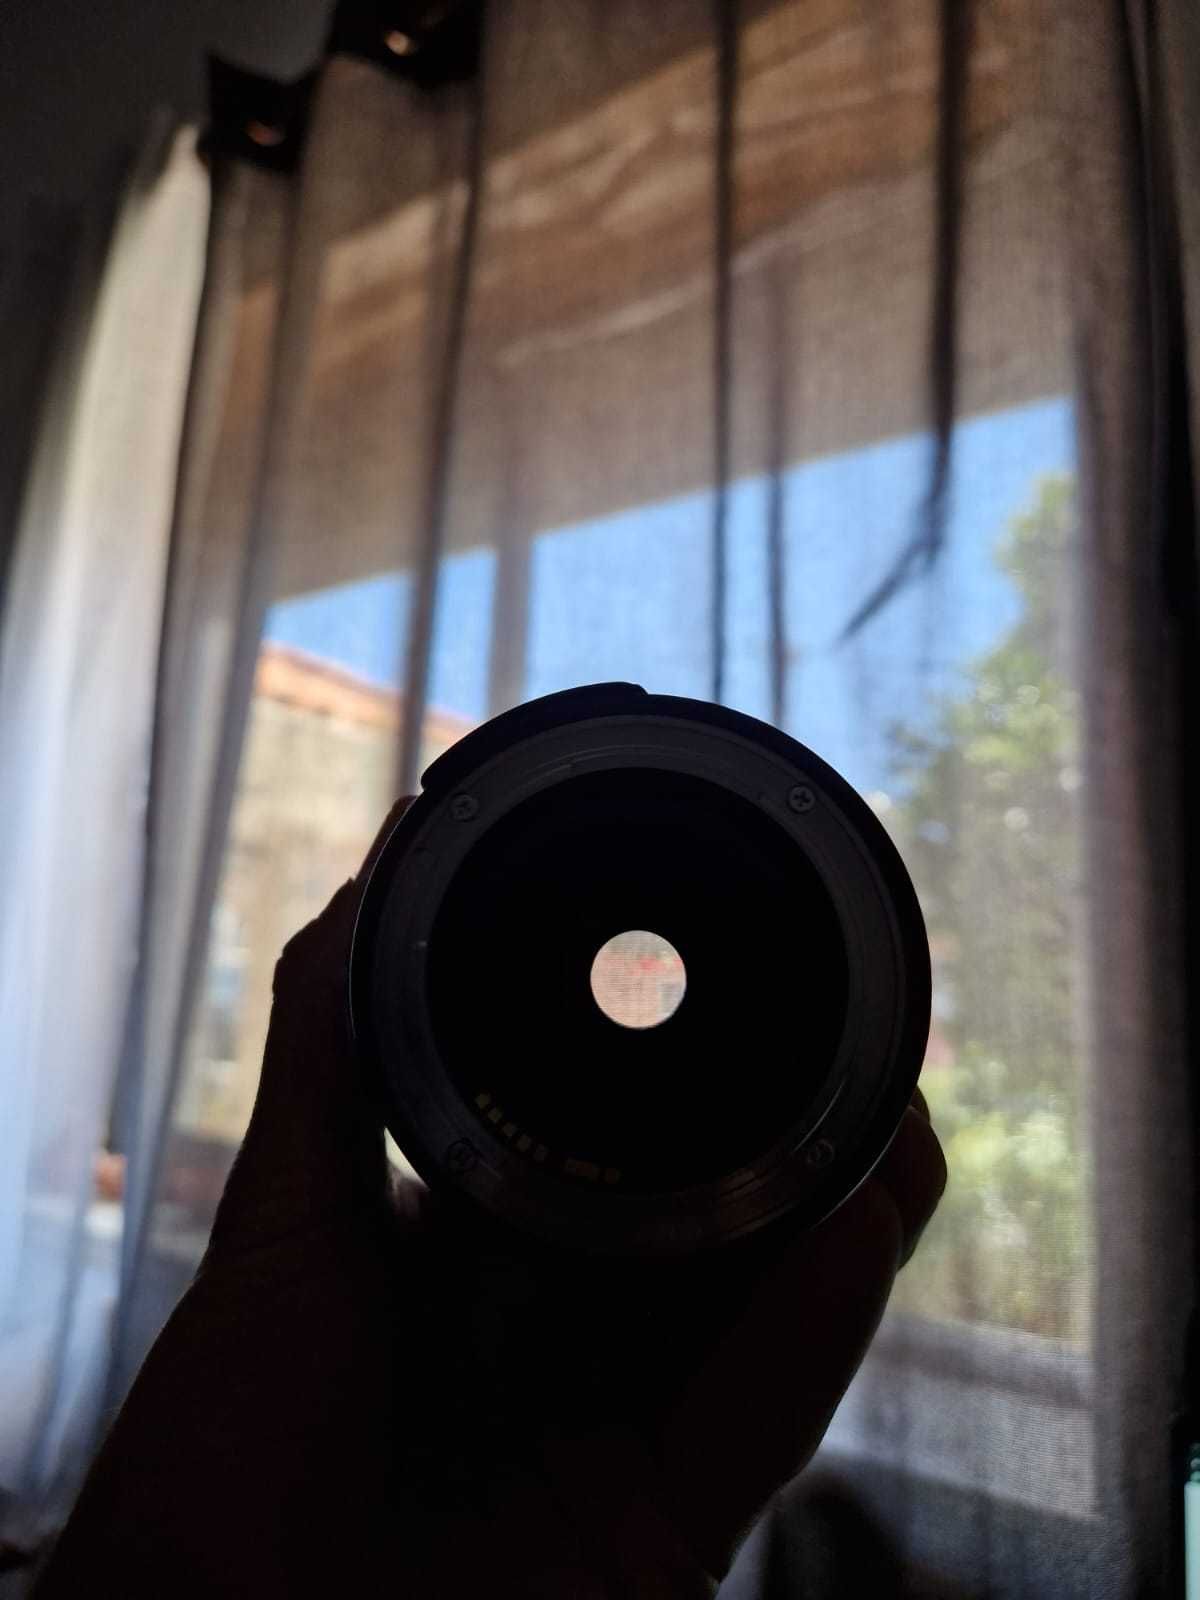 Objectiva Canon lente 18-135mm 3.5 - 5.6 STM